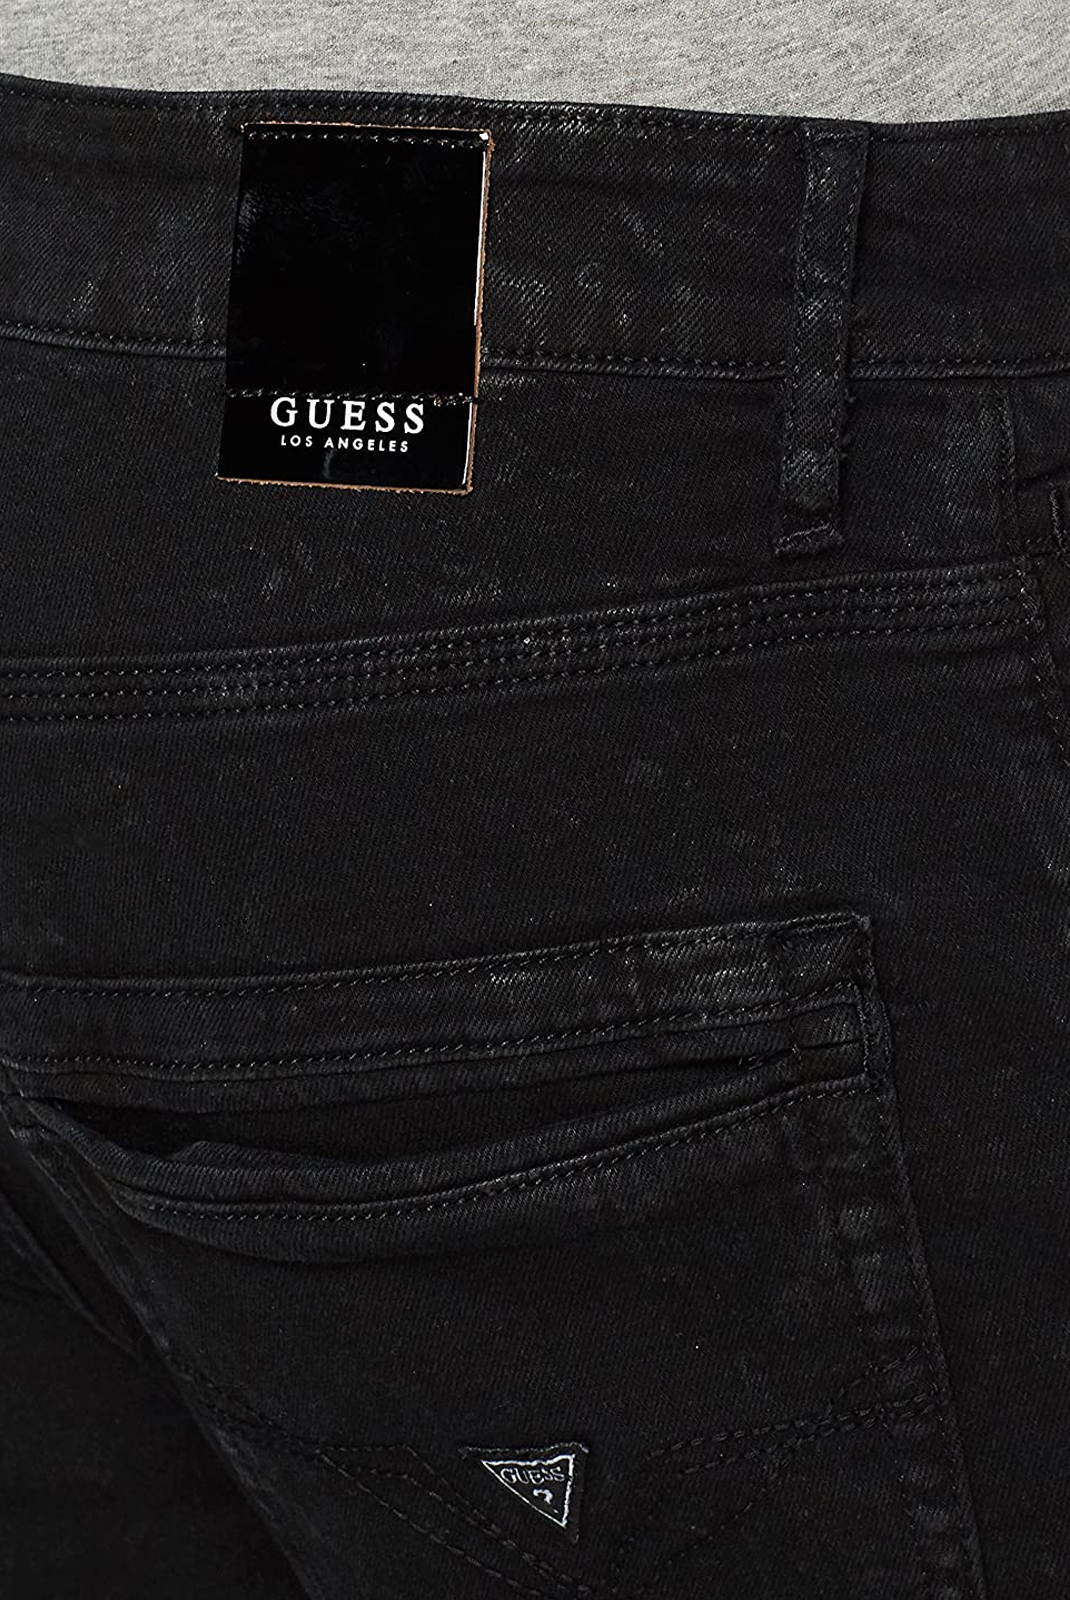 Guess Jeans Noir Slim M81a05d2ym0 Cliff 